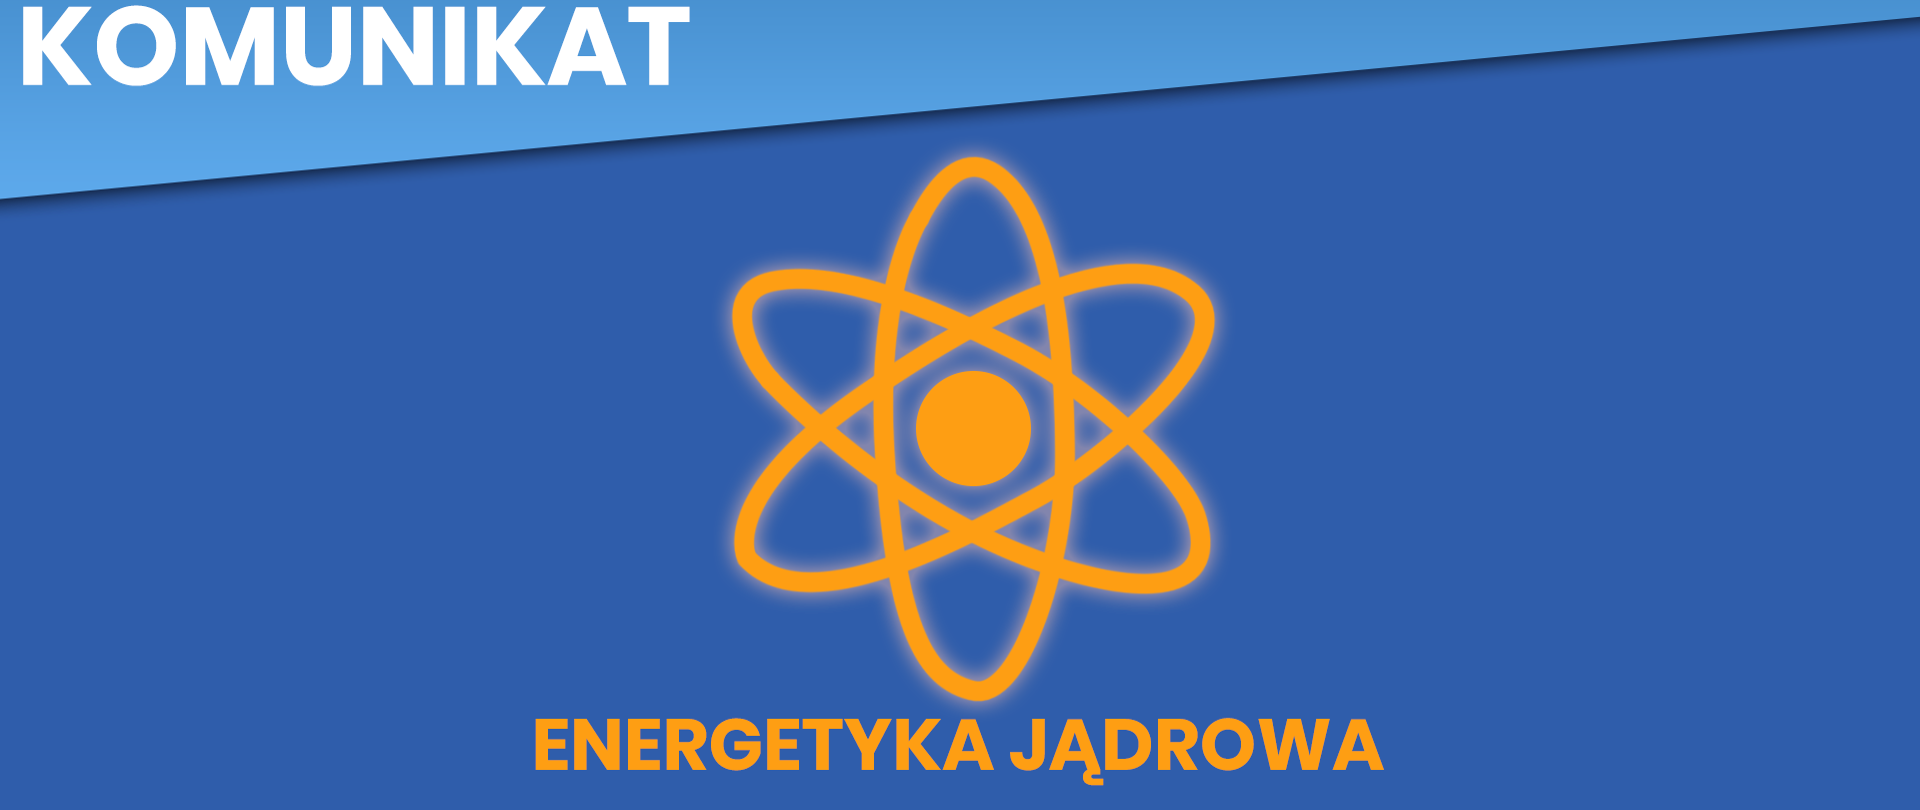 Plansza Energetyka Jądrowa